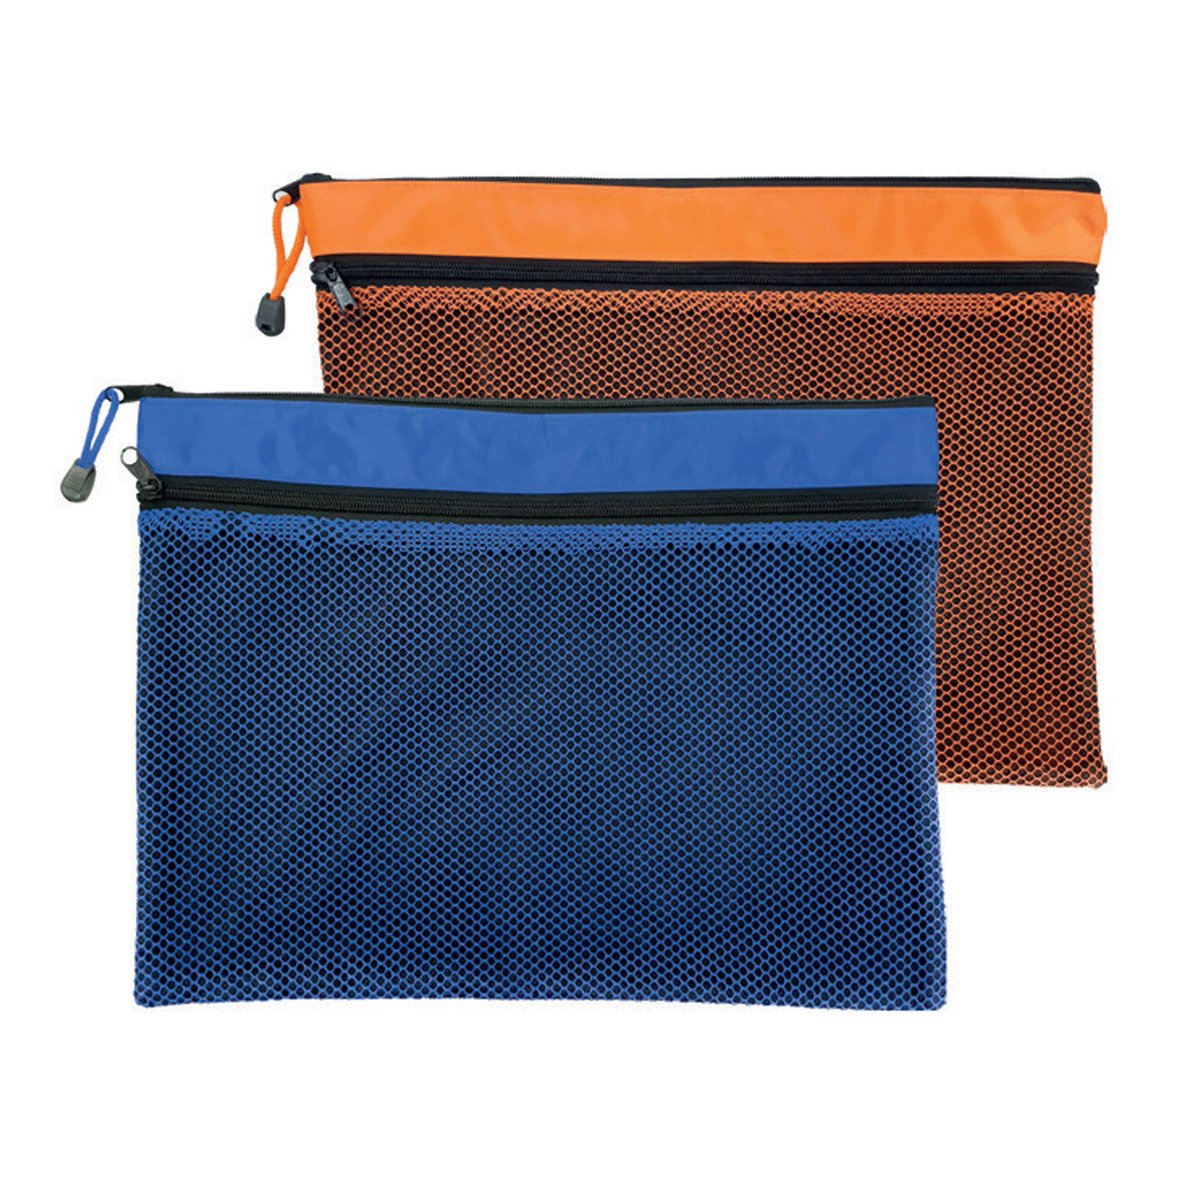 Maxi Double Zipper Bag 37x28.5cm 2's MXDZBNB4 Assorted Colors